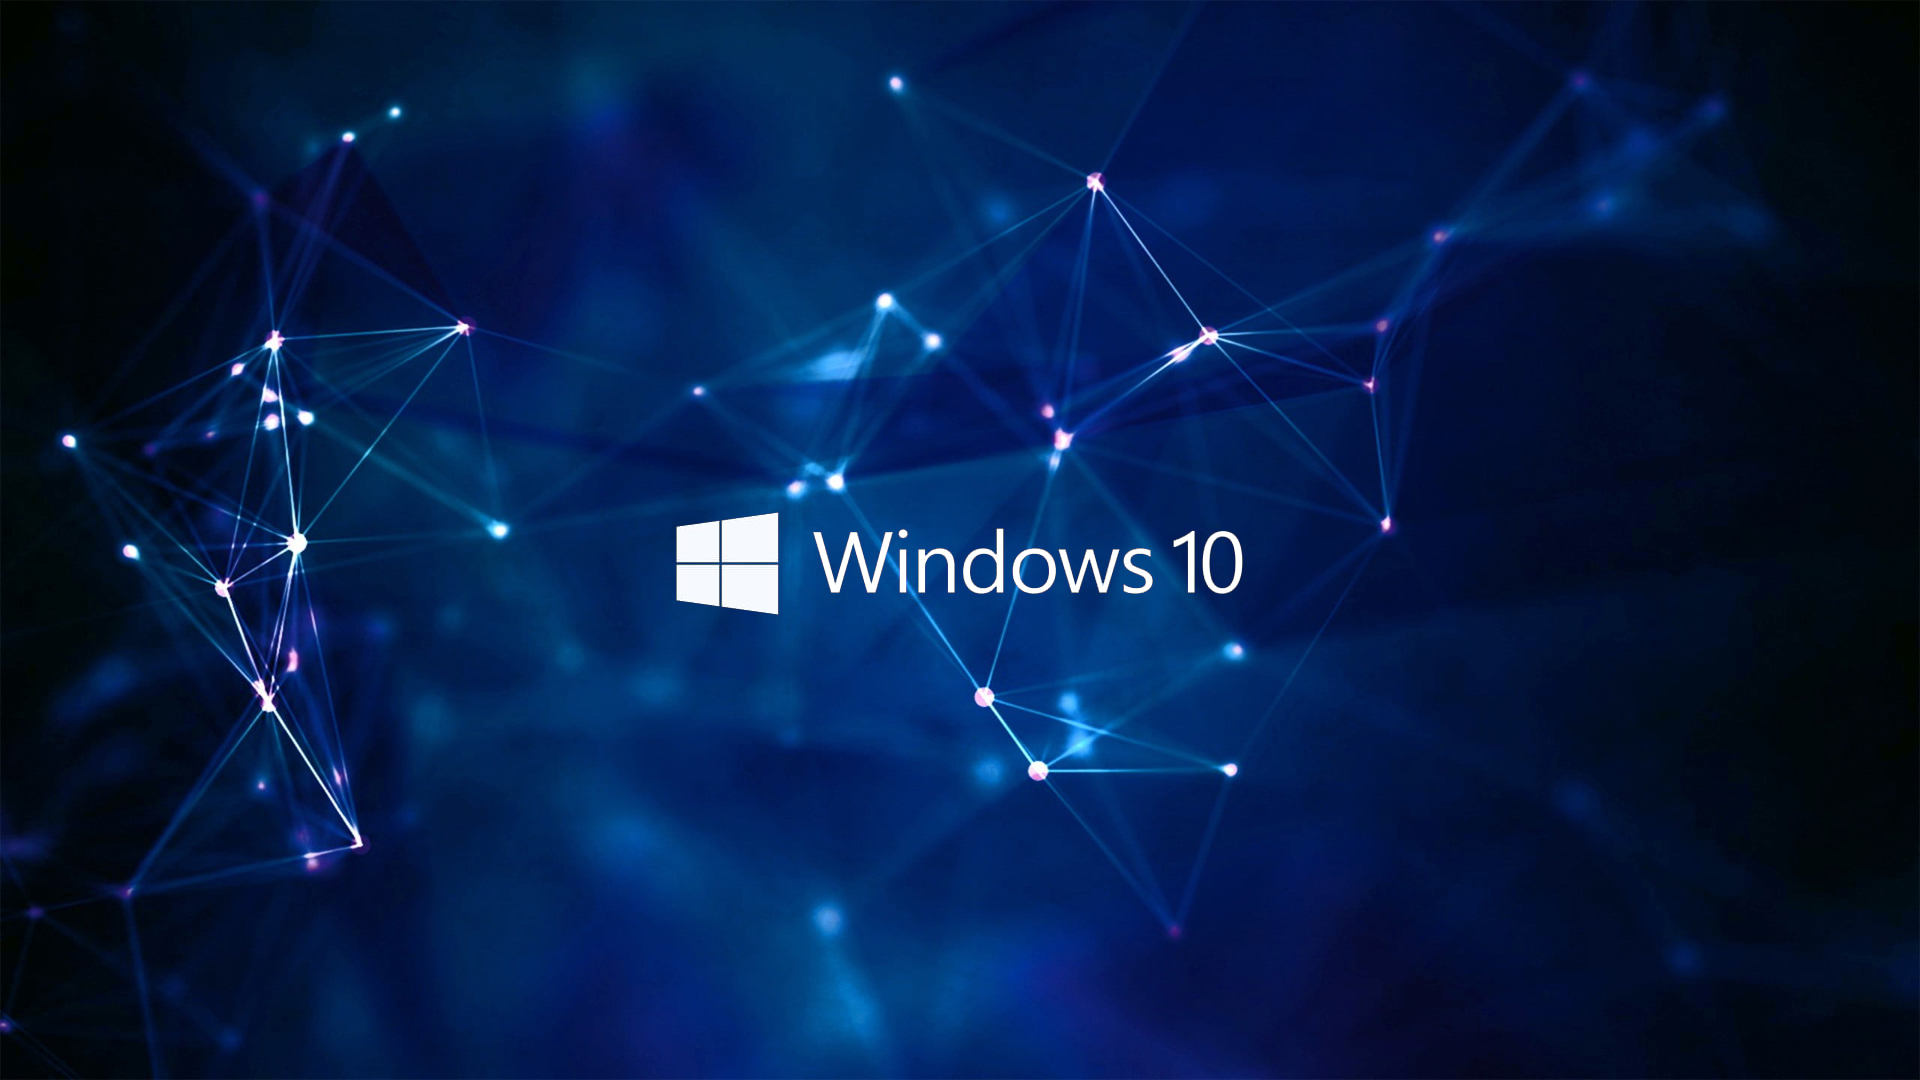 Hình nền Windows 10/7 Logo là biểu tượng hình ảnh được nhắc đến rất nhiều trong ngành công nghiệp công nghệ hiện đại. Bạn sẽ cảm thấy thật ấn tượng khi chọn một hình nền Windows 10/7 Logo phù hợp với mình để thể hiện tình yêu và đam mê với công nghệ.